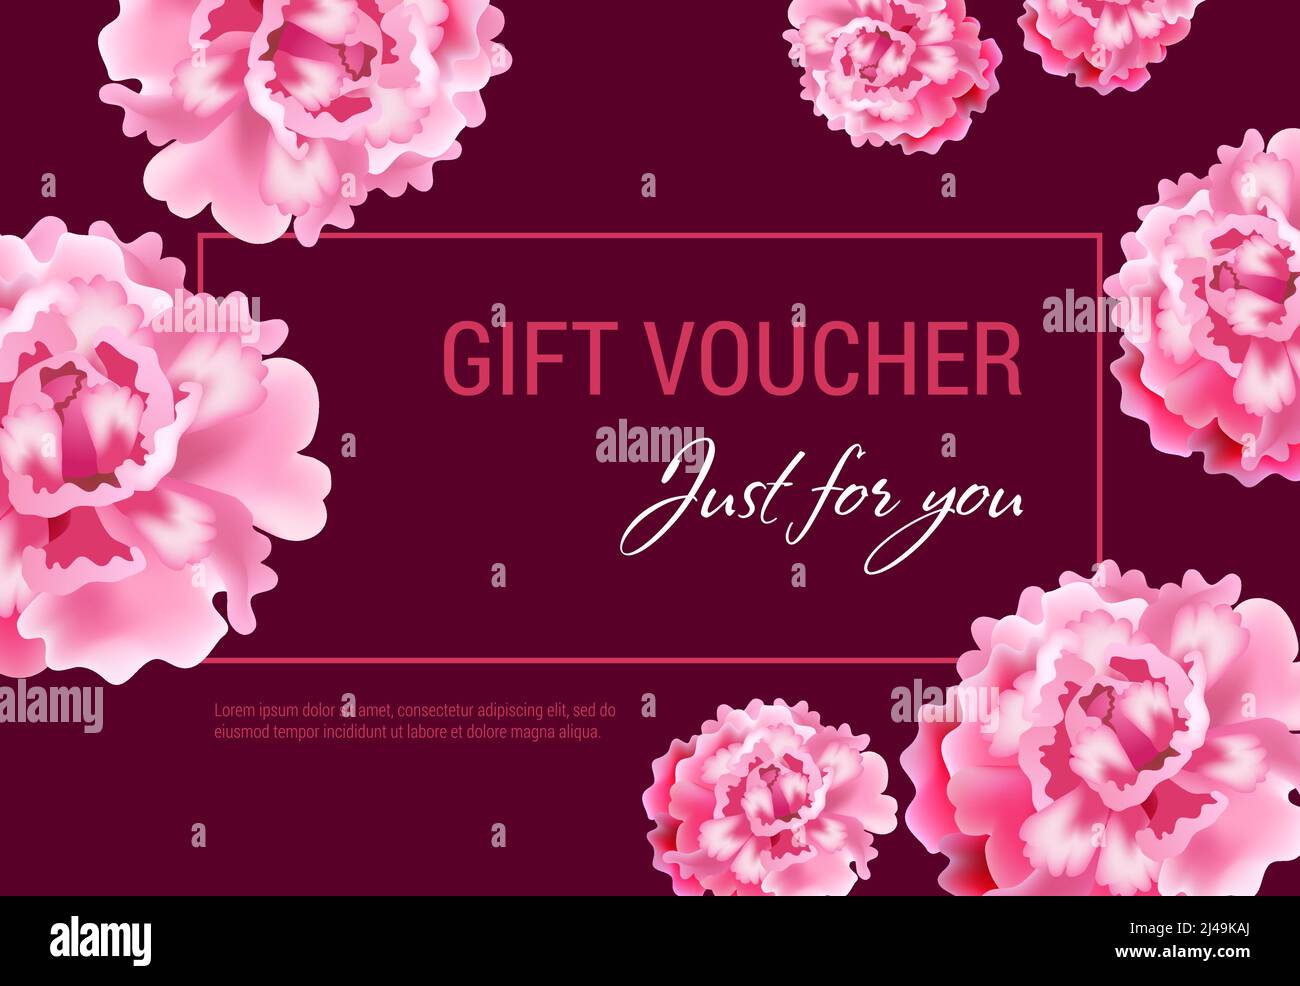 Solo per voi regalo voucher design con fiori rosa e cornice su sfondo vinoso. Il testo può essere utilizzato per coupon, certificati, volantini Illustrazione Vettoriale